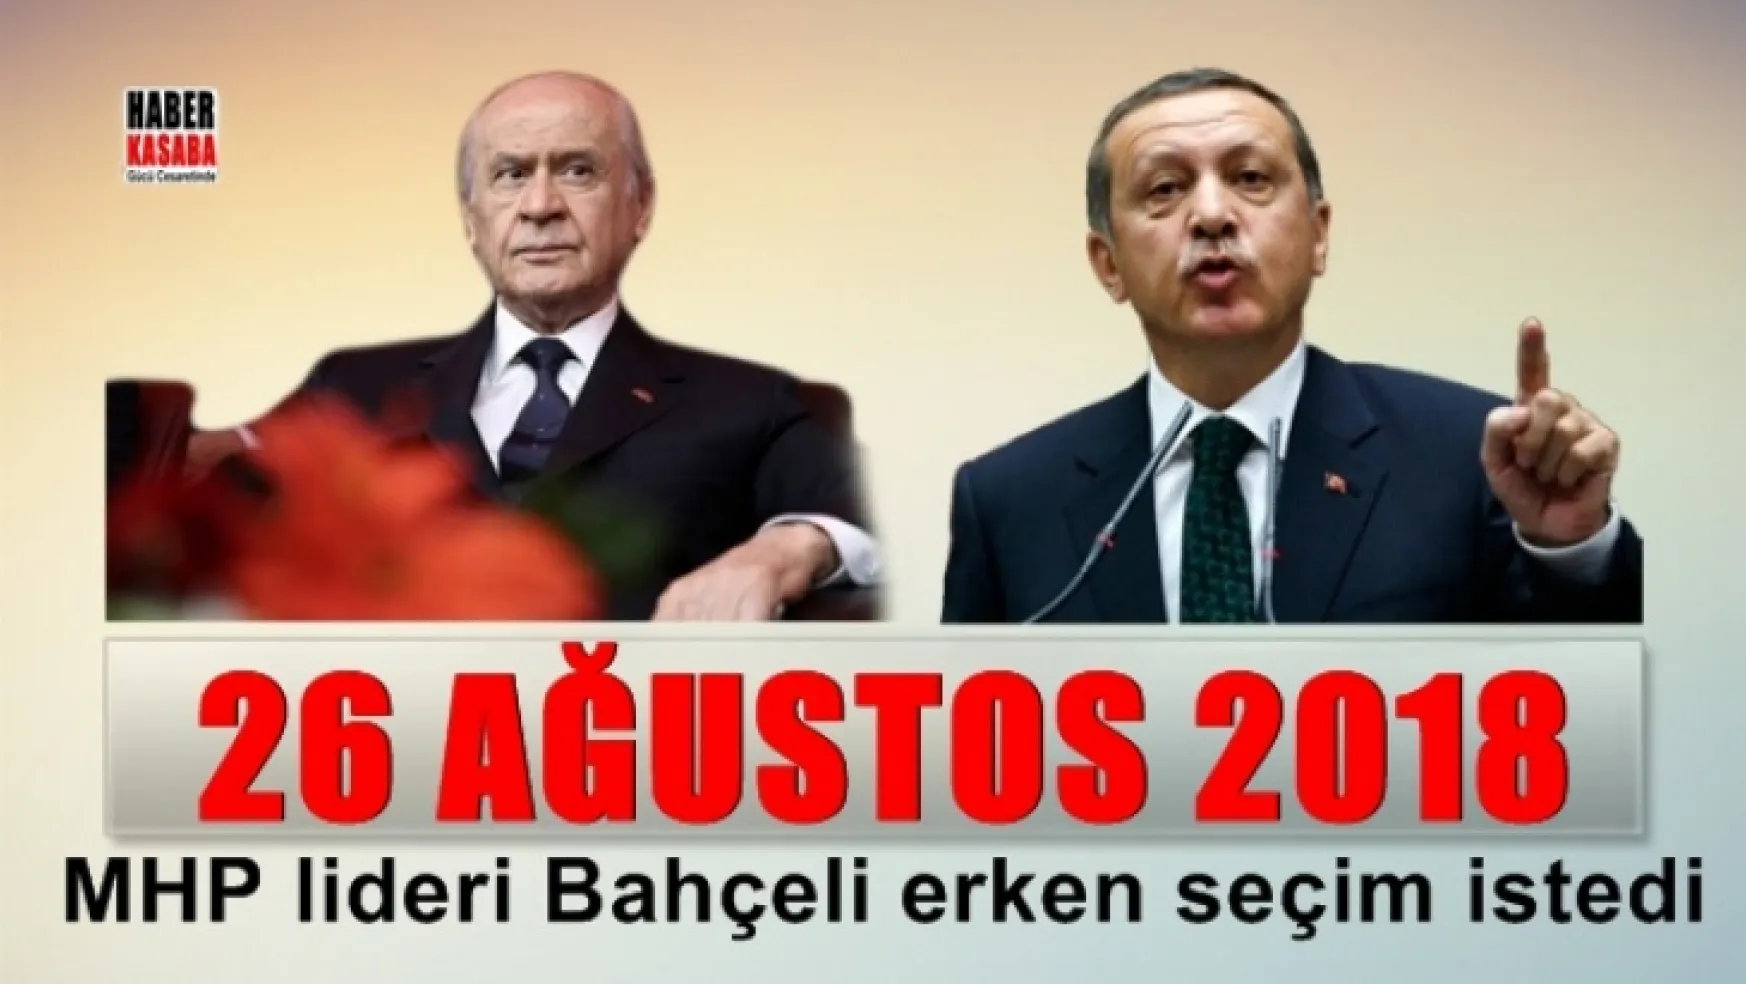 MHP Lideri Bahçeli erken seçim istedi